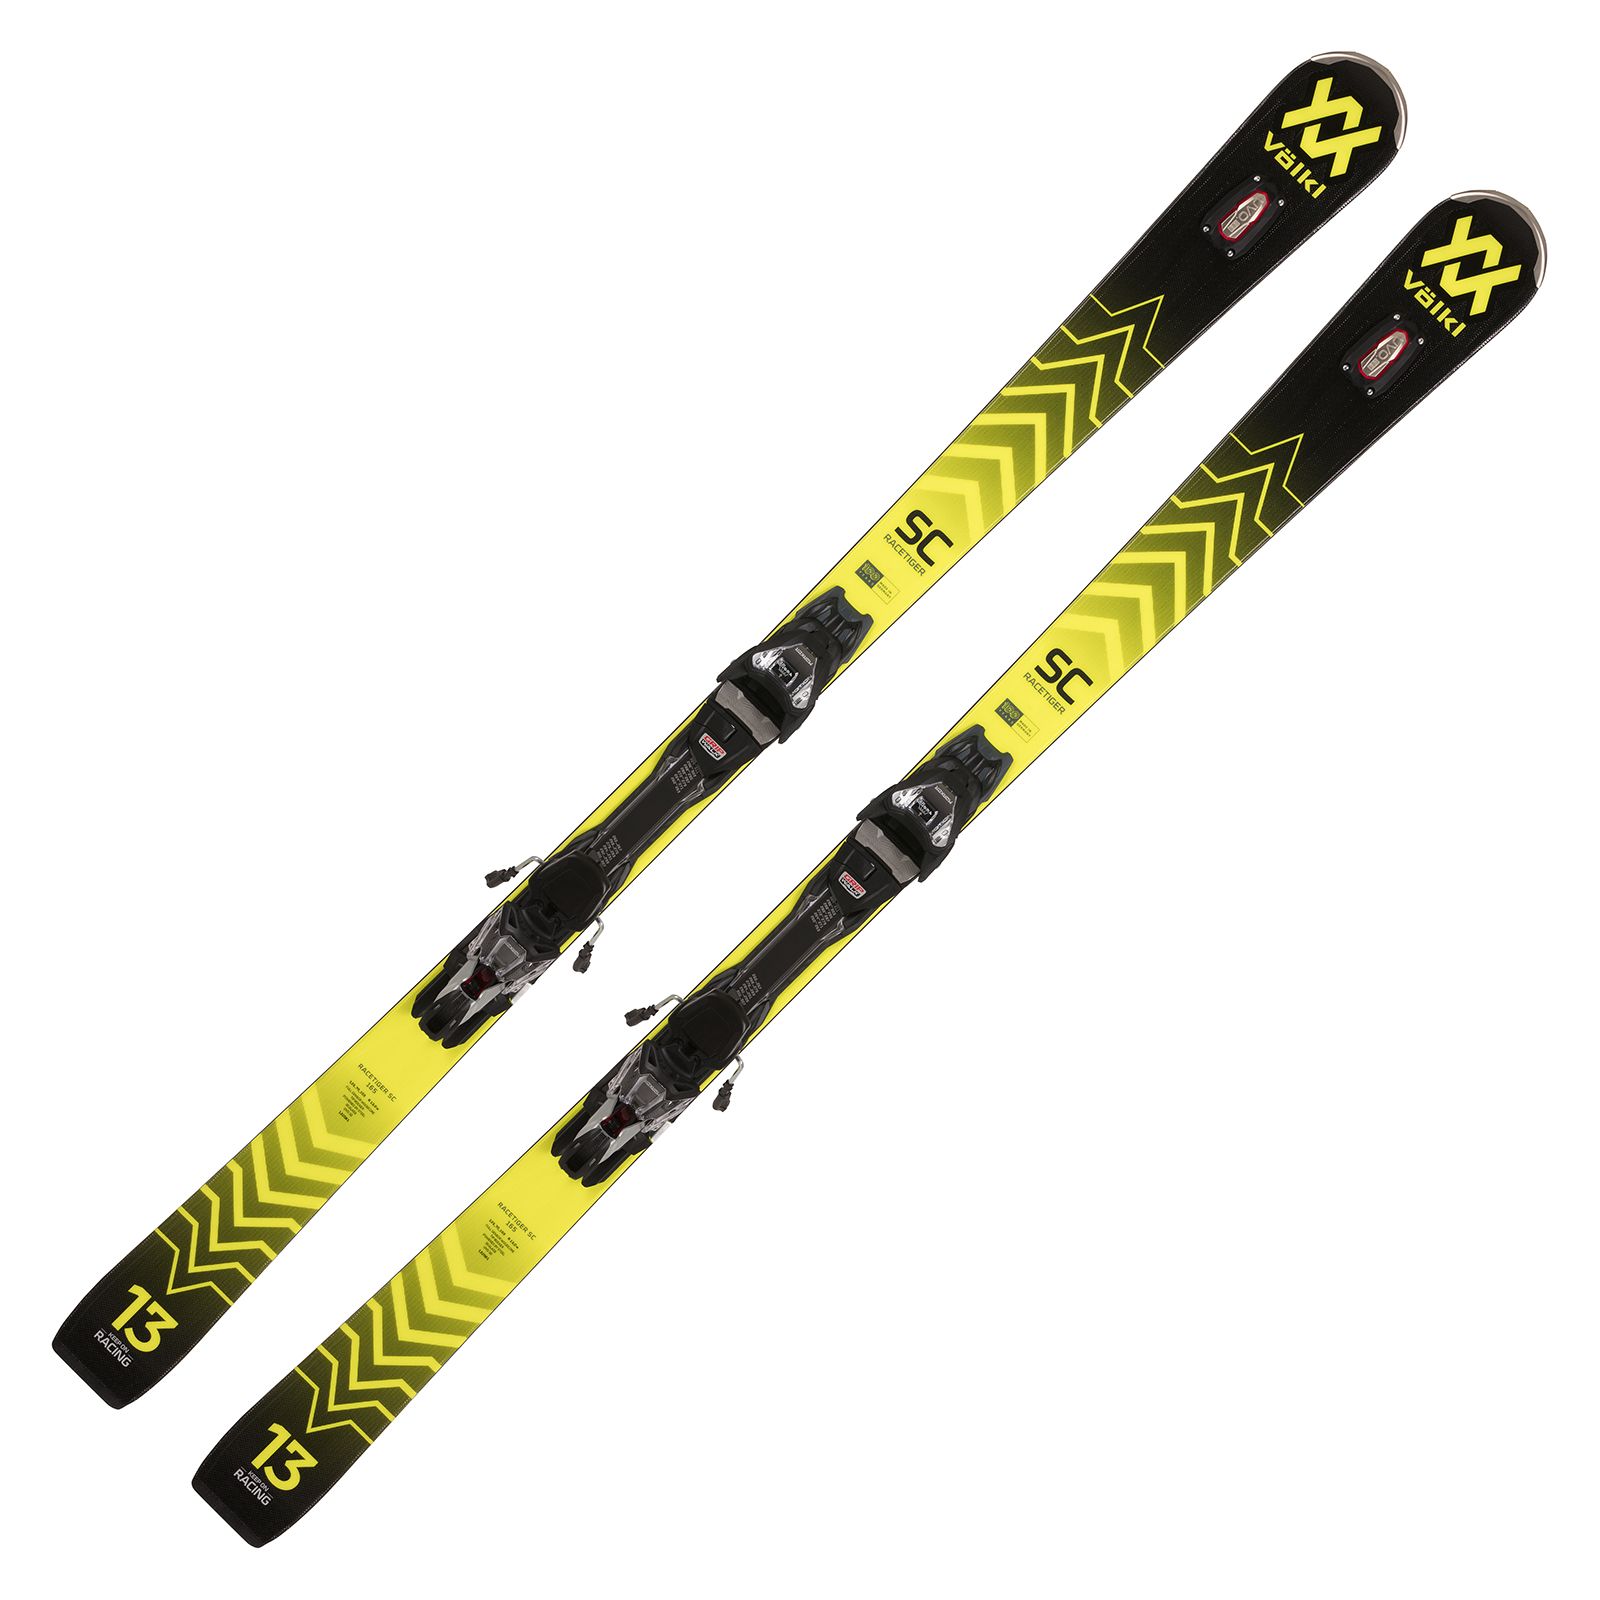 Völkl Racetiger SC black Slalomcarver Ski 2022/23